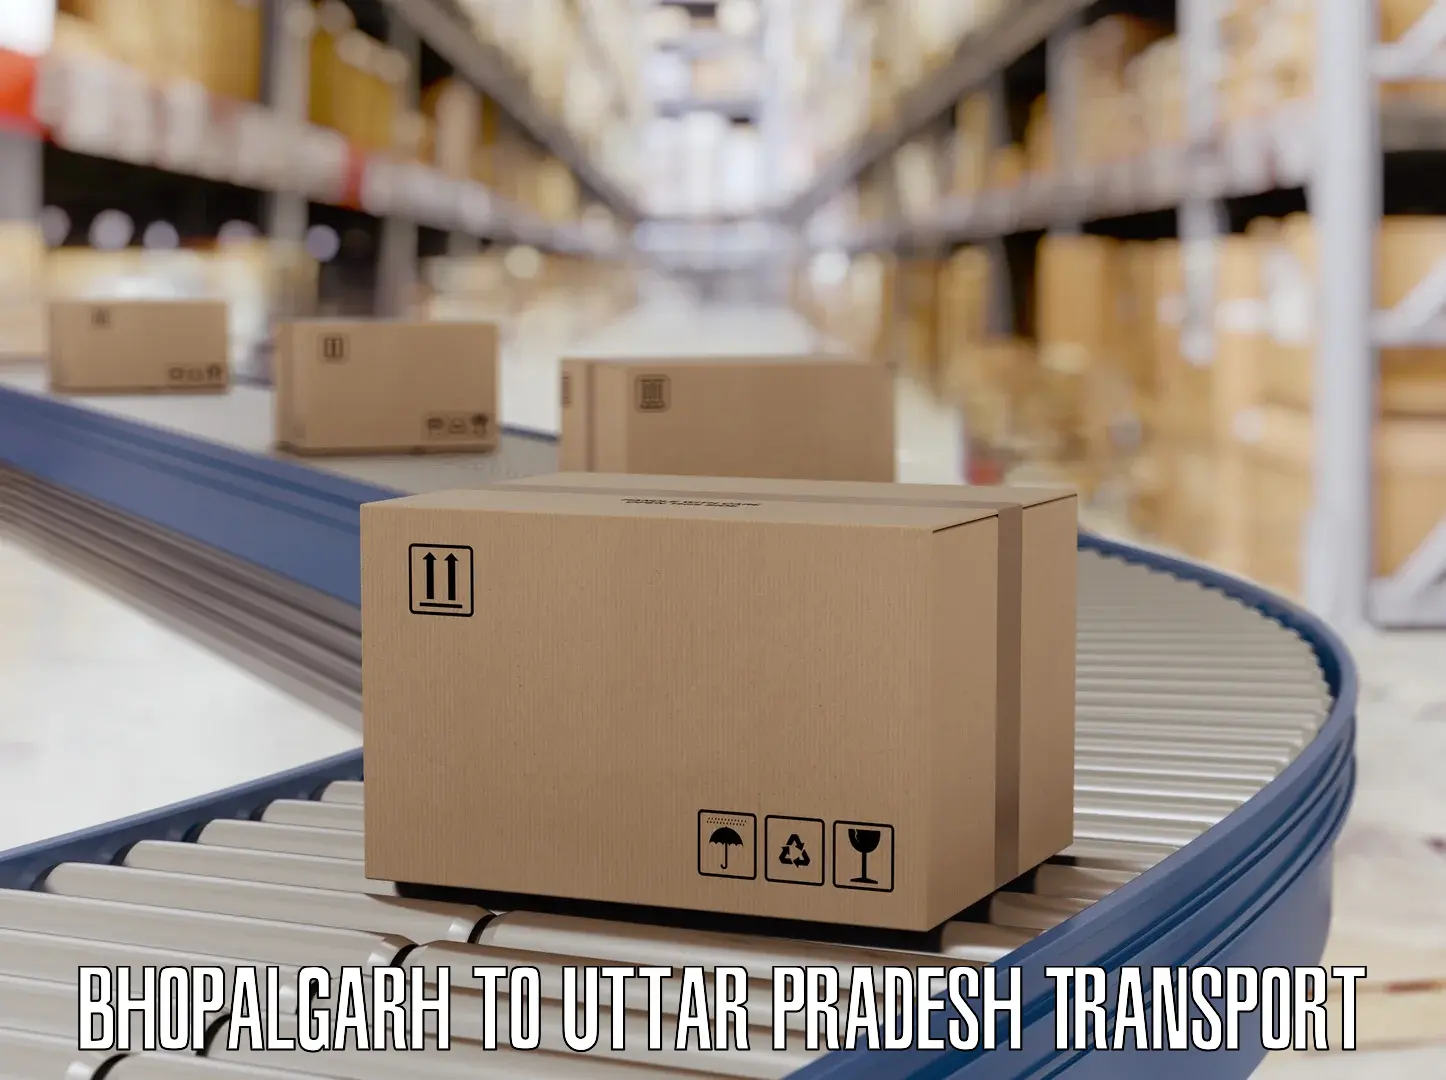 Cargo transportation services Bhopalgarh to Muzaffarnagar